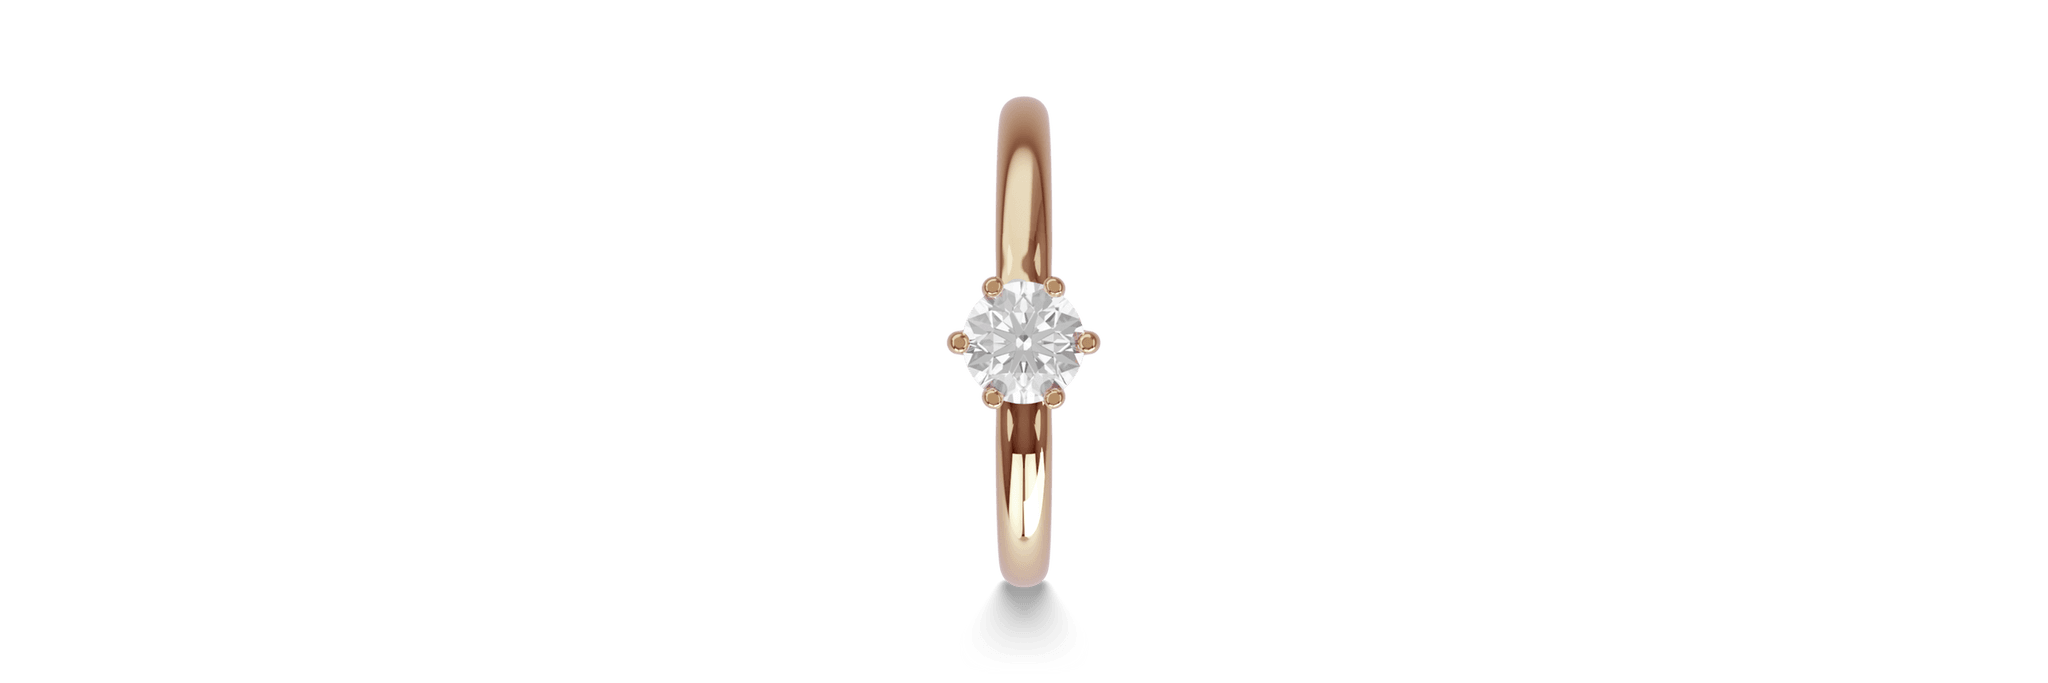 Inel de logodna din aur roz de 18K cu un diamant solitaire de 0.31ct